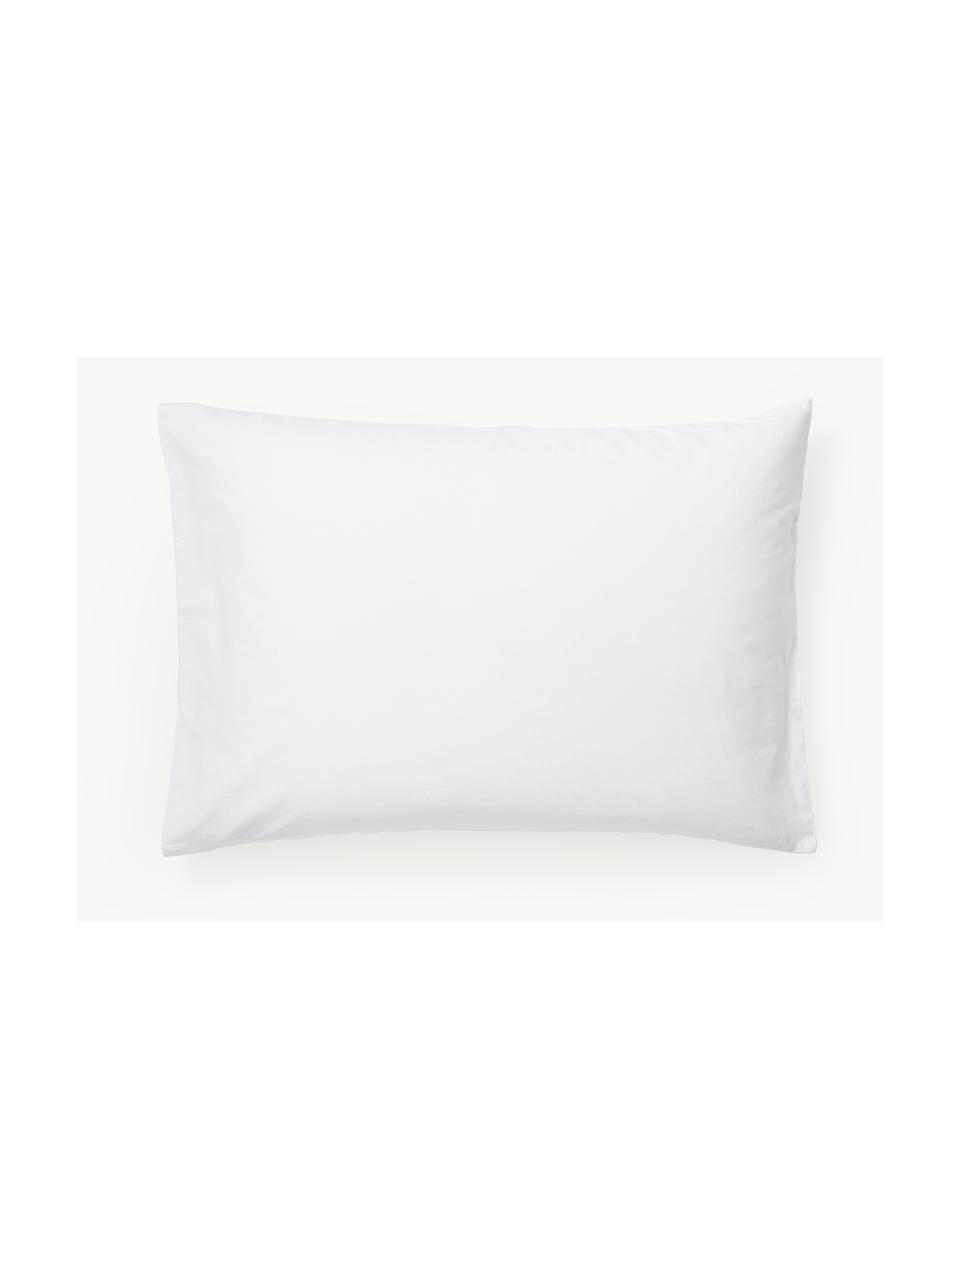 Funda de almohada de percal texturizado invernal Vidal, Blanco, An 45 x L 110 cm